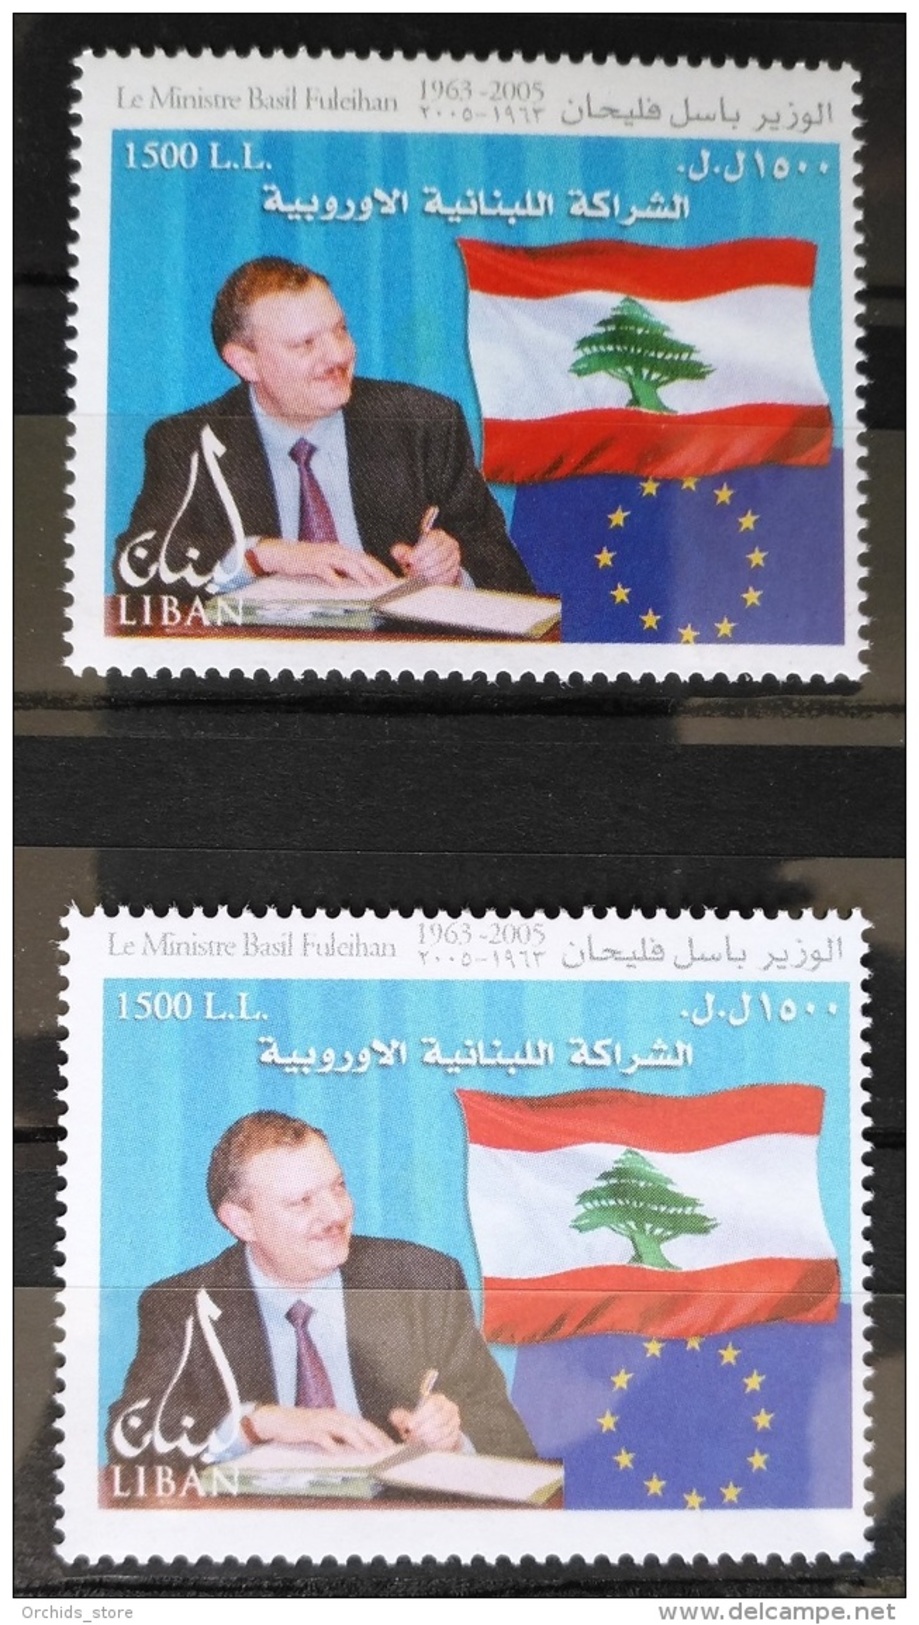 Lebanon 2007 Basil Fuleihan 1500L Variety Stamp + Normal, MNH - Lebanon